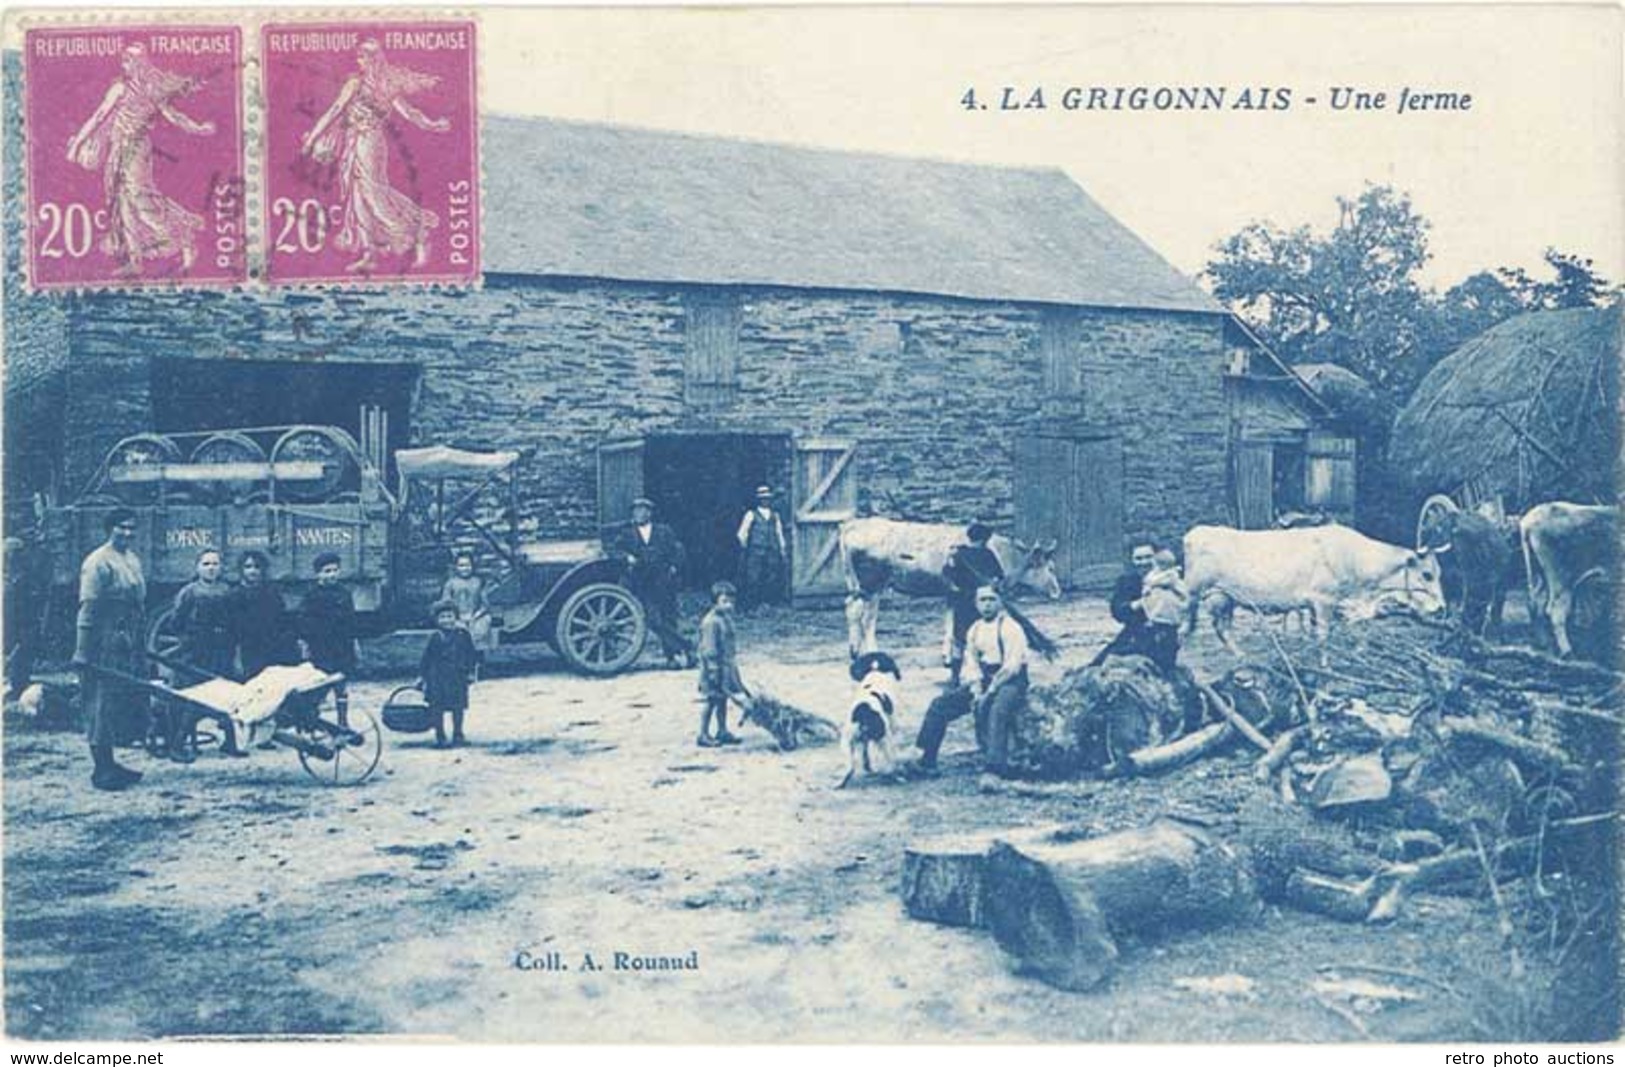 TB 44 – La Grigonnais – 4 Une Ferme – Coll. A. Rouaud - Ars-sur-Formans